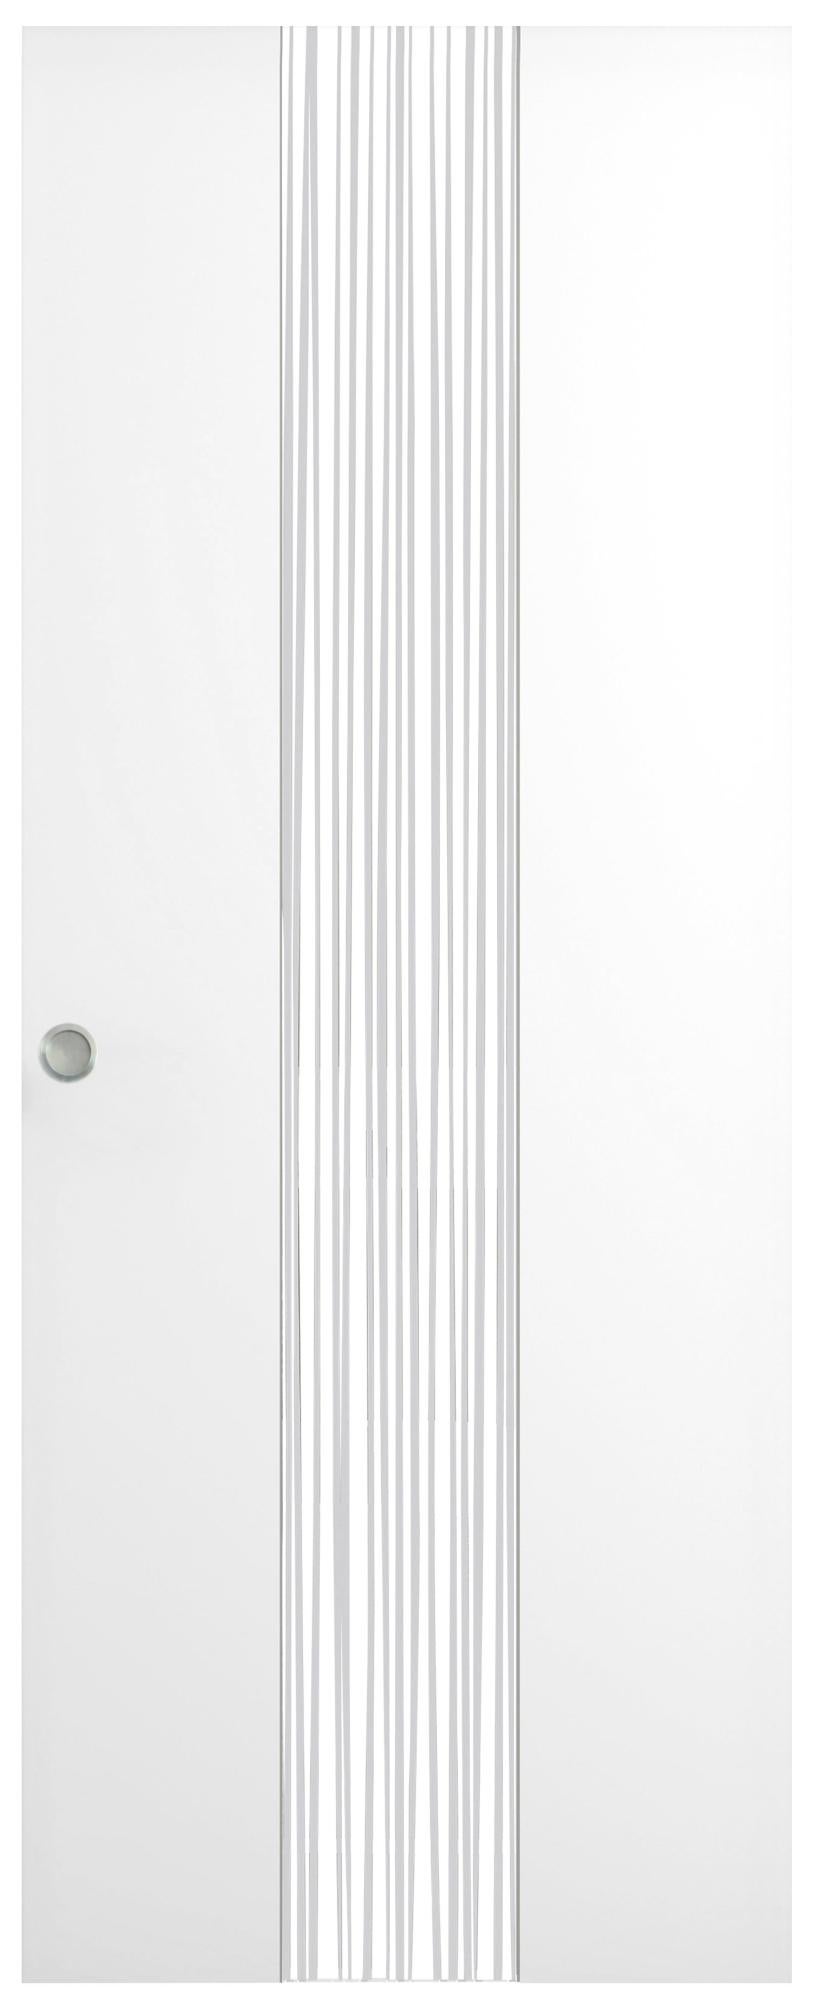 Puerta de interior corredera quevedo blanco de 82.5 cm